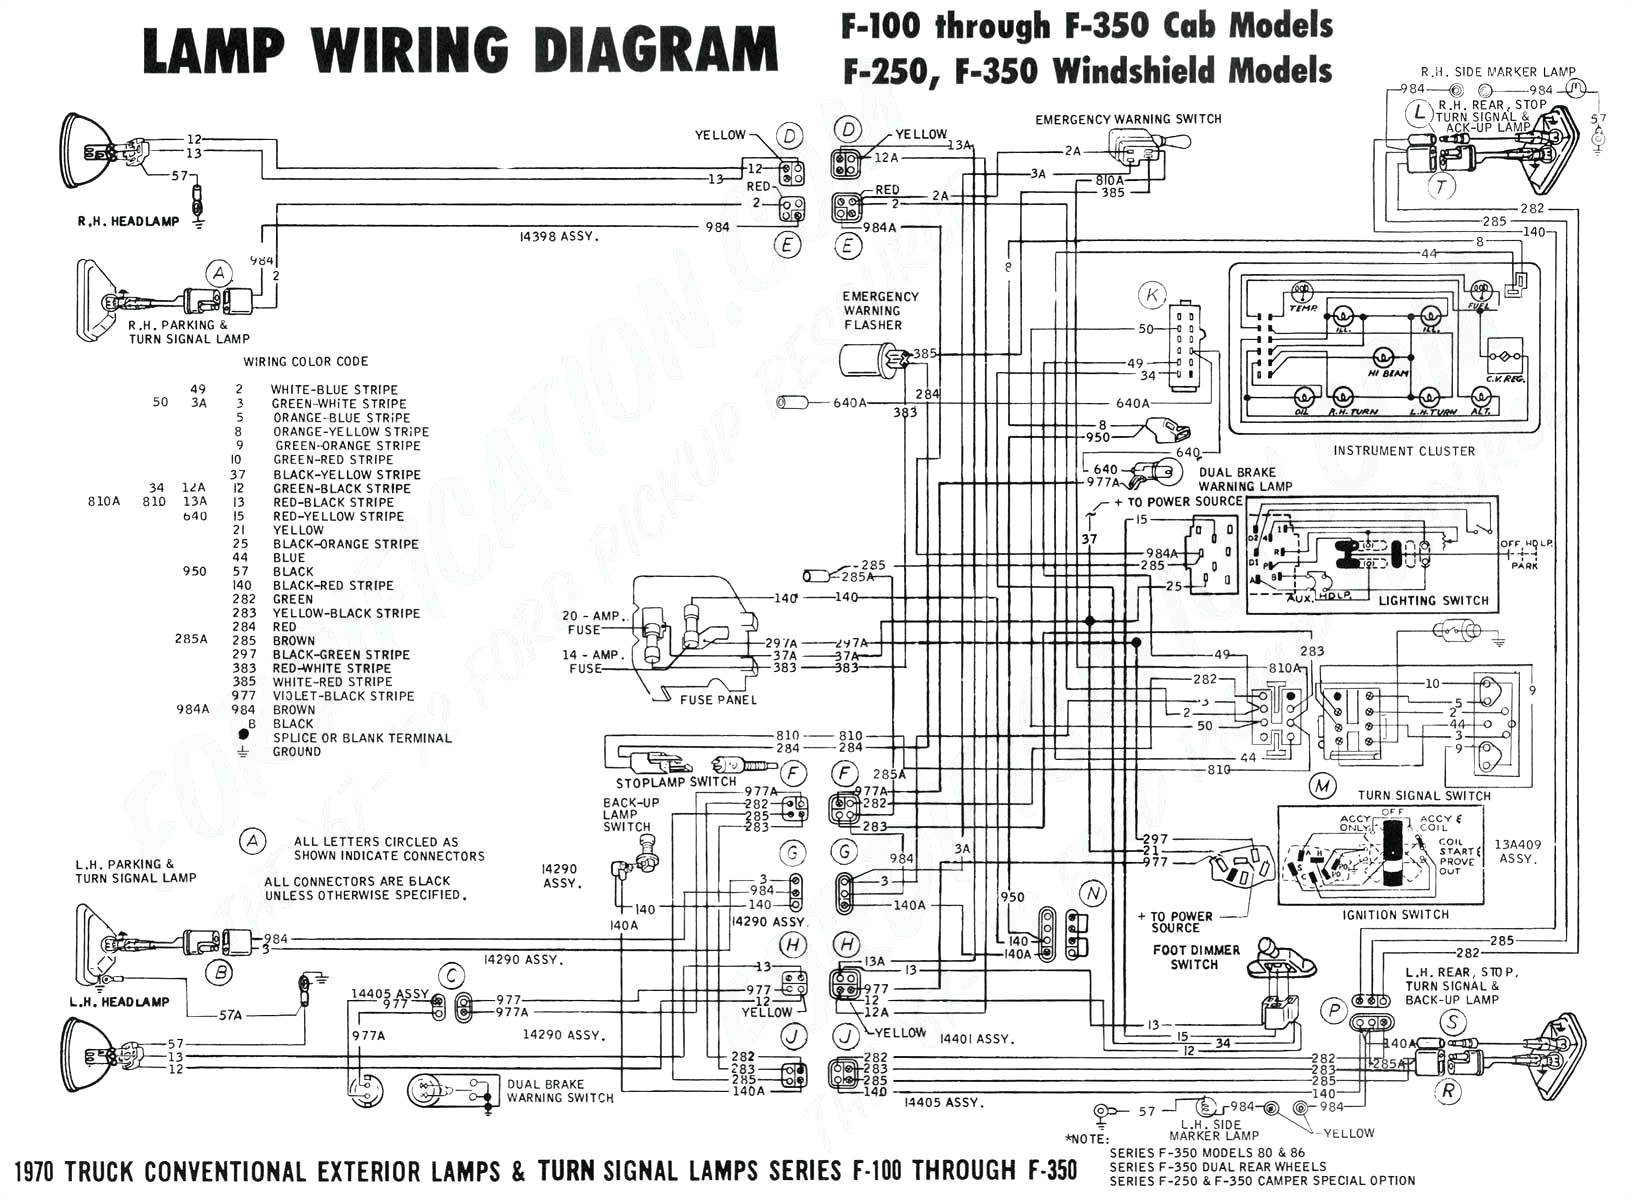 wiring diagram for circuit breaker get free image about wiring free electrical wiring diagrams wiring diagram